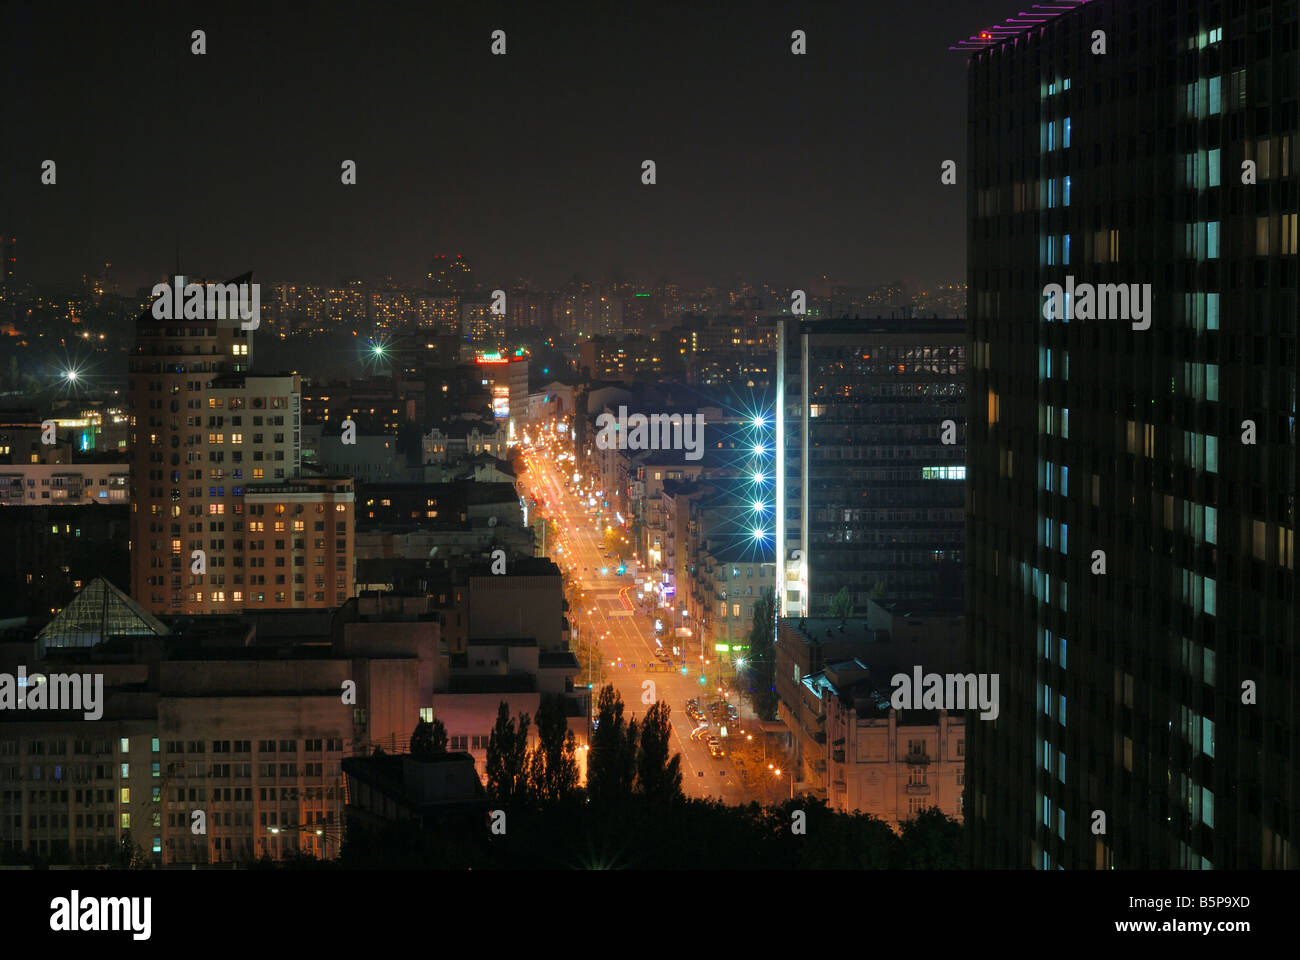 Brillamment éclairé de la rue au milieu de bâtiments avec windows, spotlit nuit paysage urbain, high angle view Banque D'Images